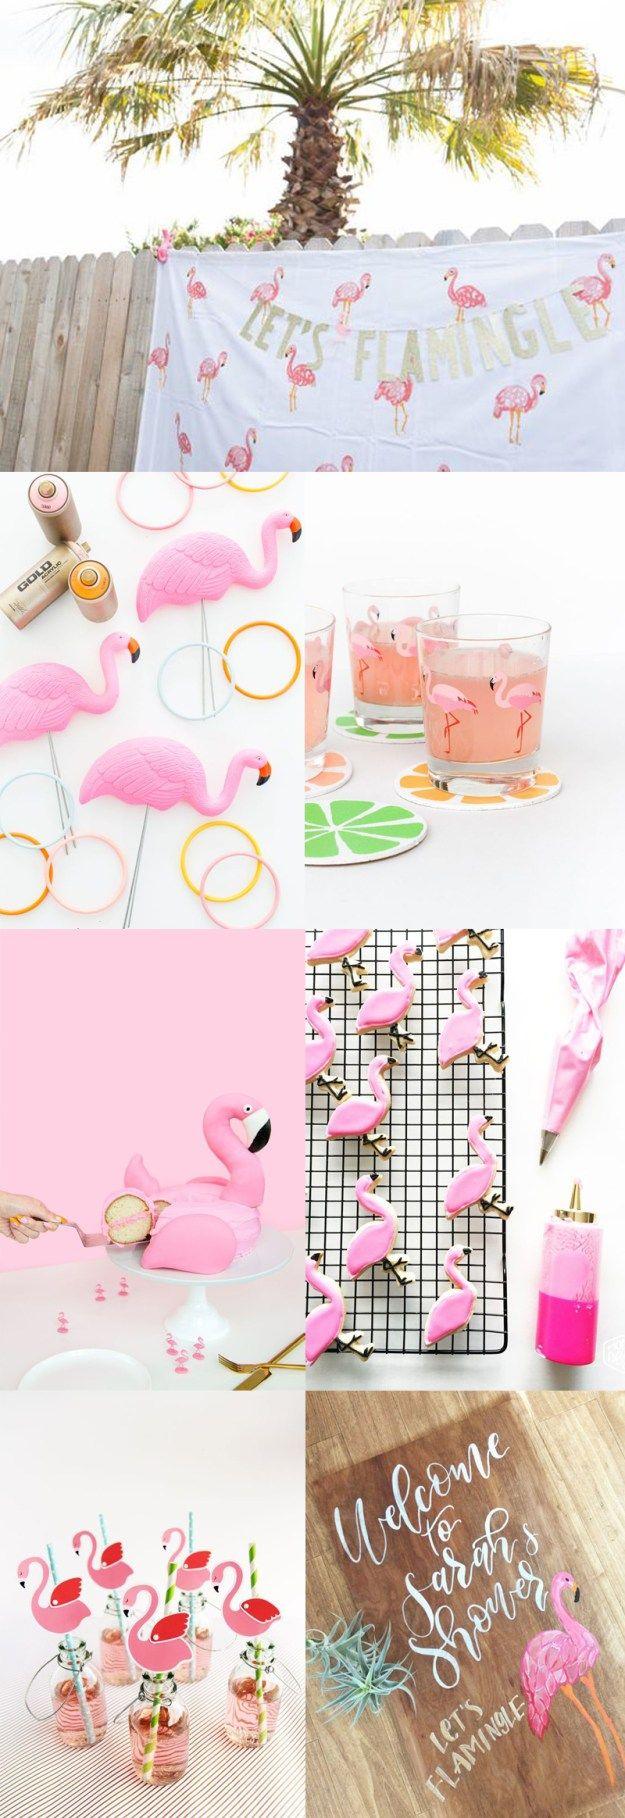 Wedding - "Let's Flamingle" Flamingo Bridal Shower Inspiration